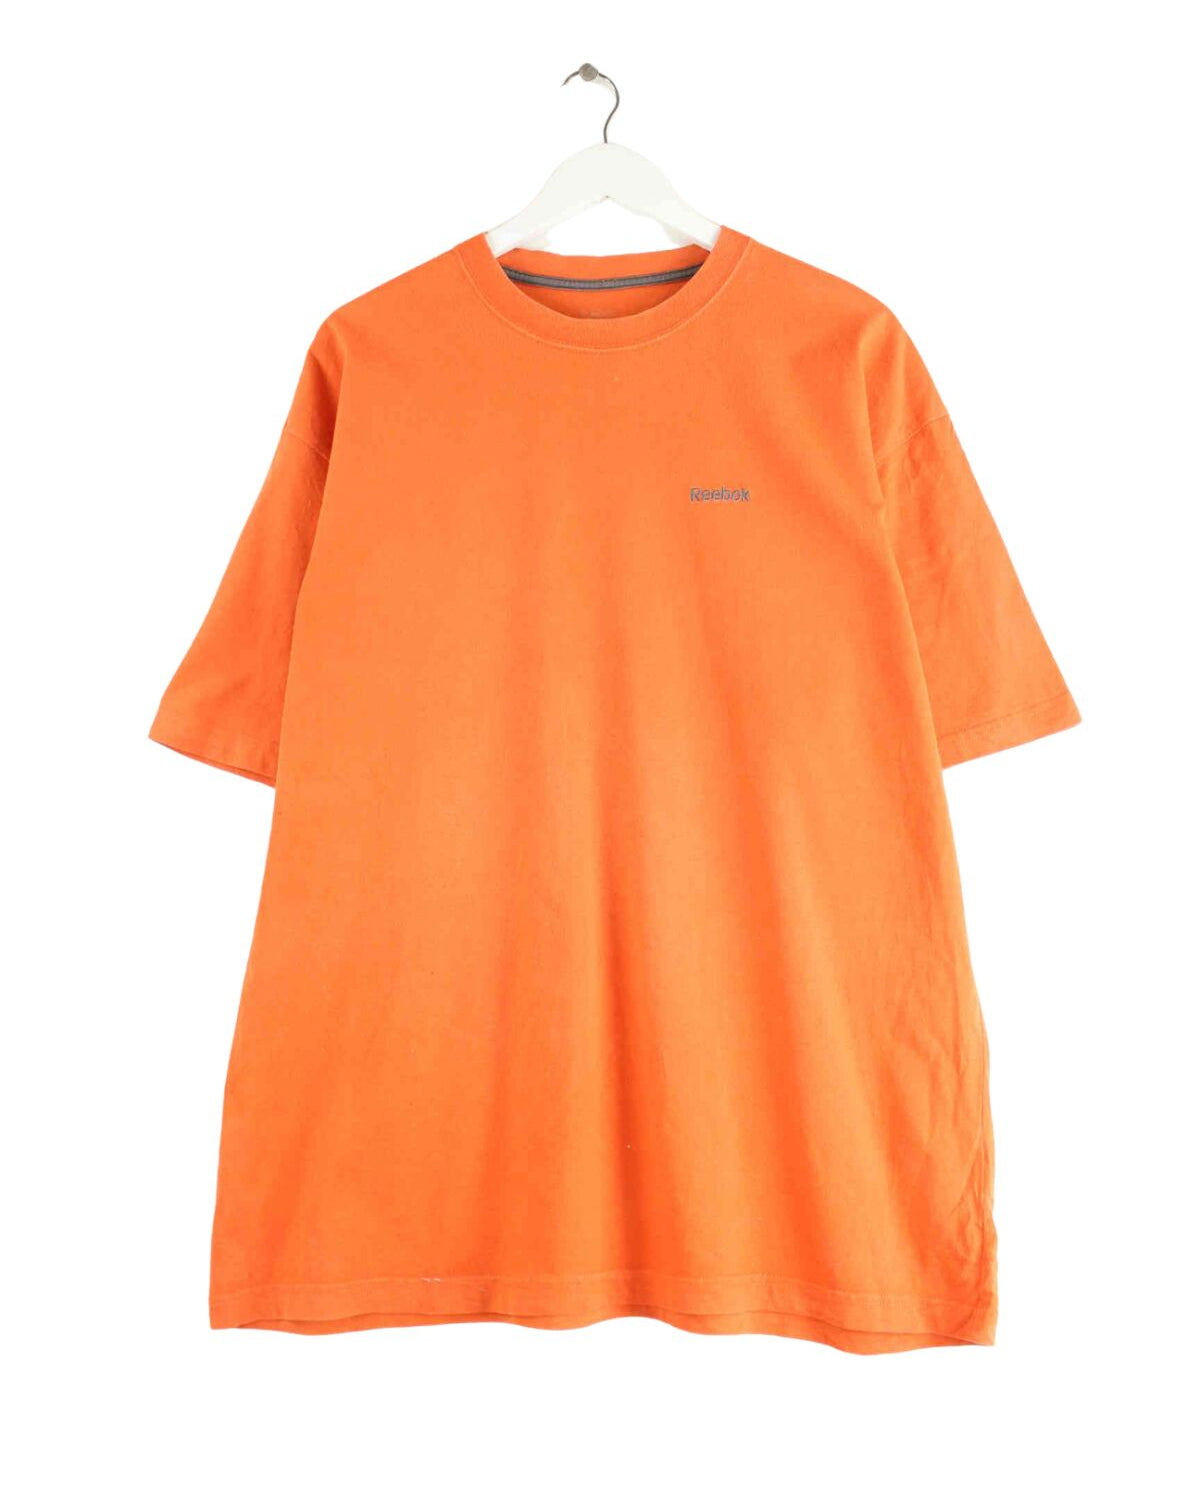 Reebok Basic T-Shirt Orange XXL (front image)